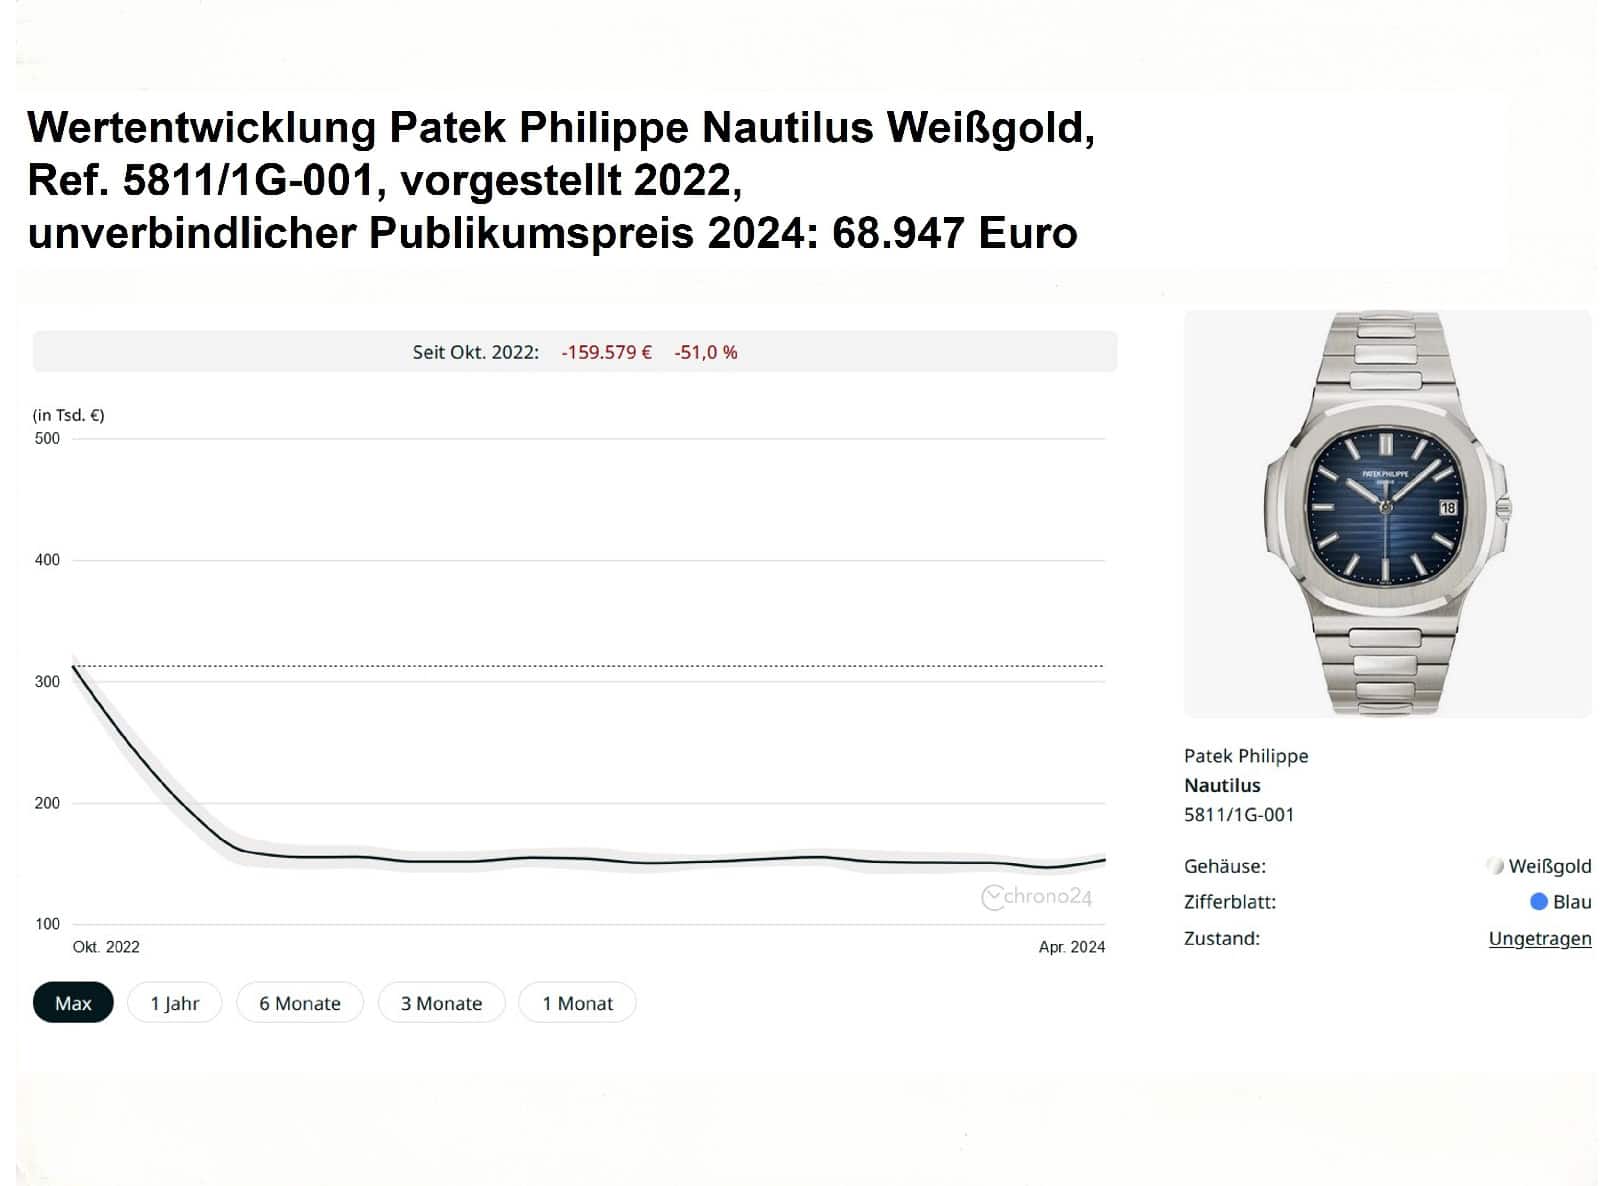 Wertentwicklung Patek Philippe Nautilus Ref 5811-1G-001 PP 68947 Chrono24